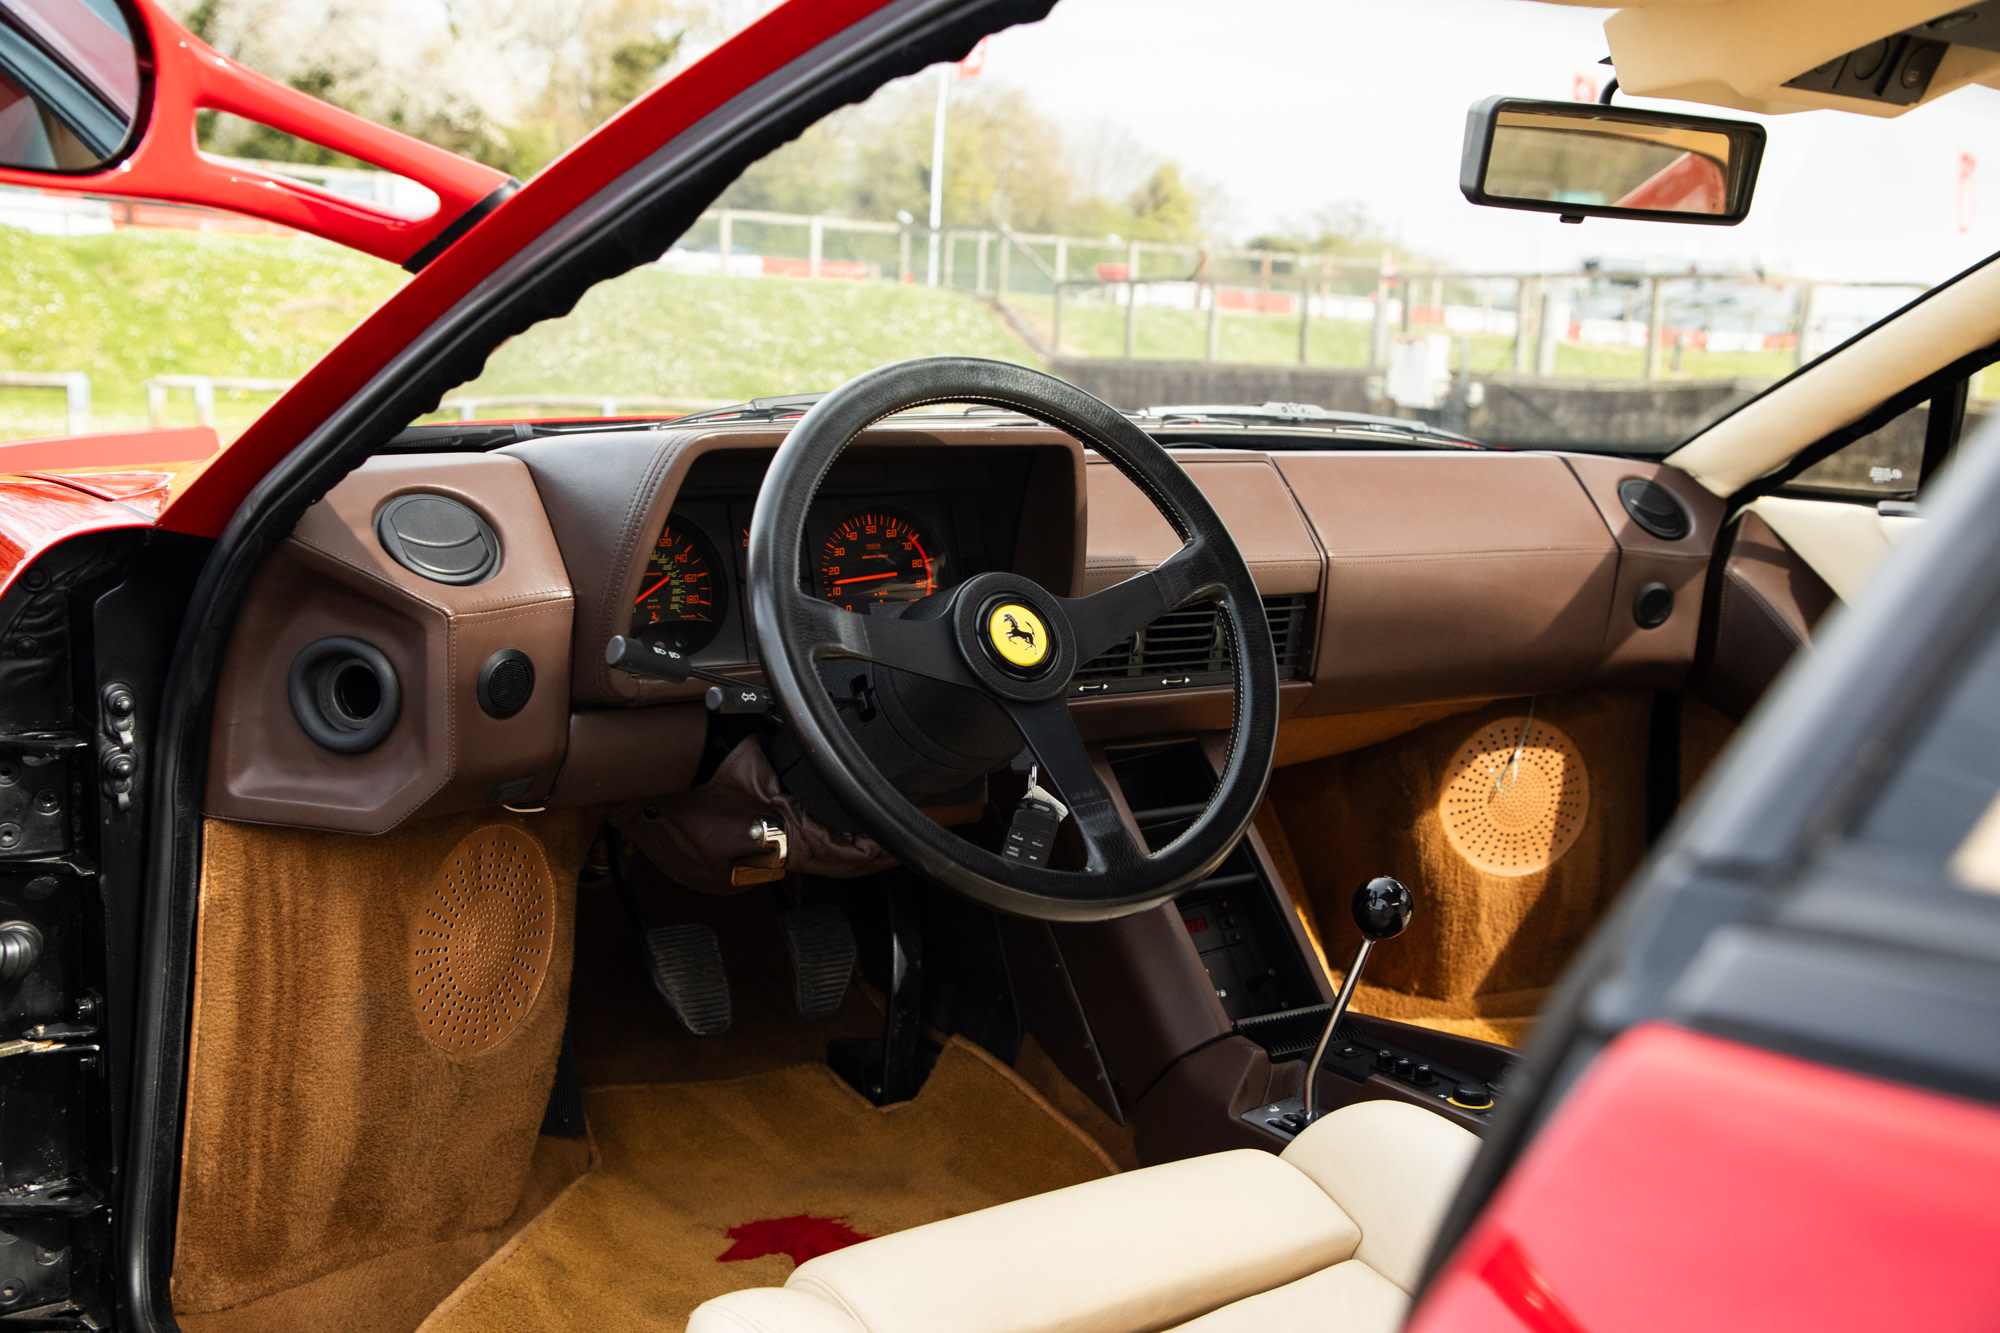 This Ferrari Testarossa is an iconic ‘80s supercar, in desirable ‘Monospecchio’ configuration and in the quintessential Rosso Corsa over Crema colour scheme. 2